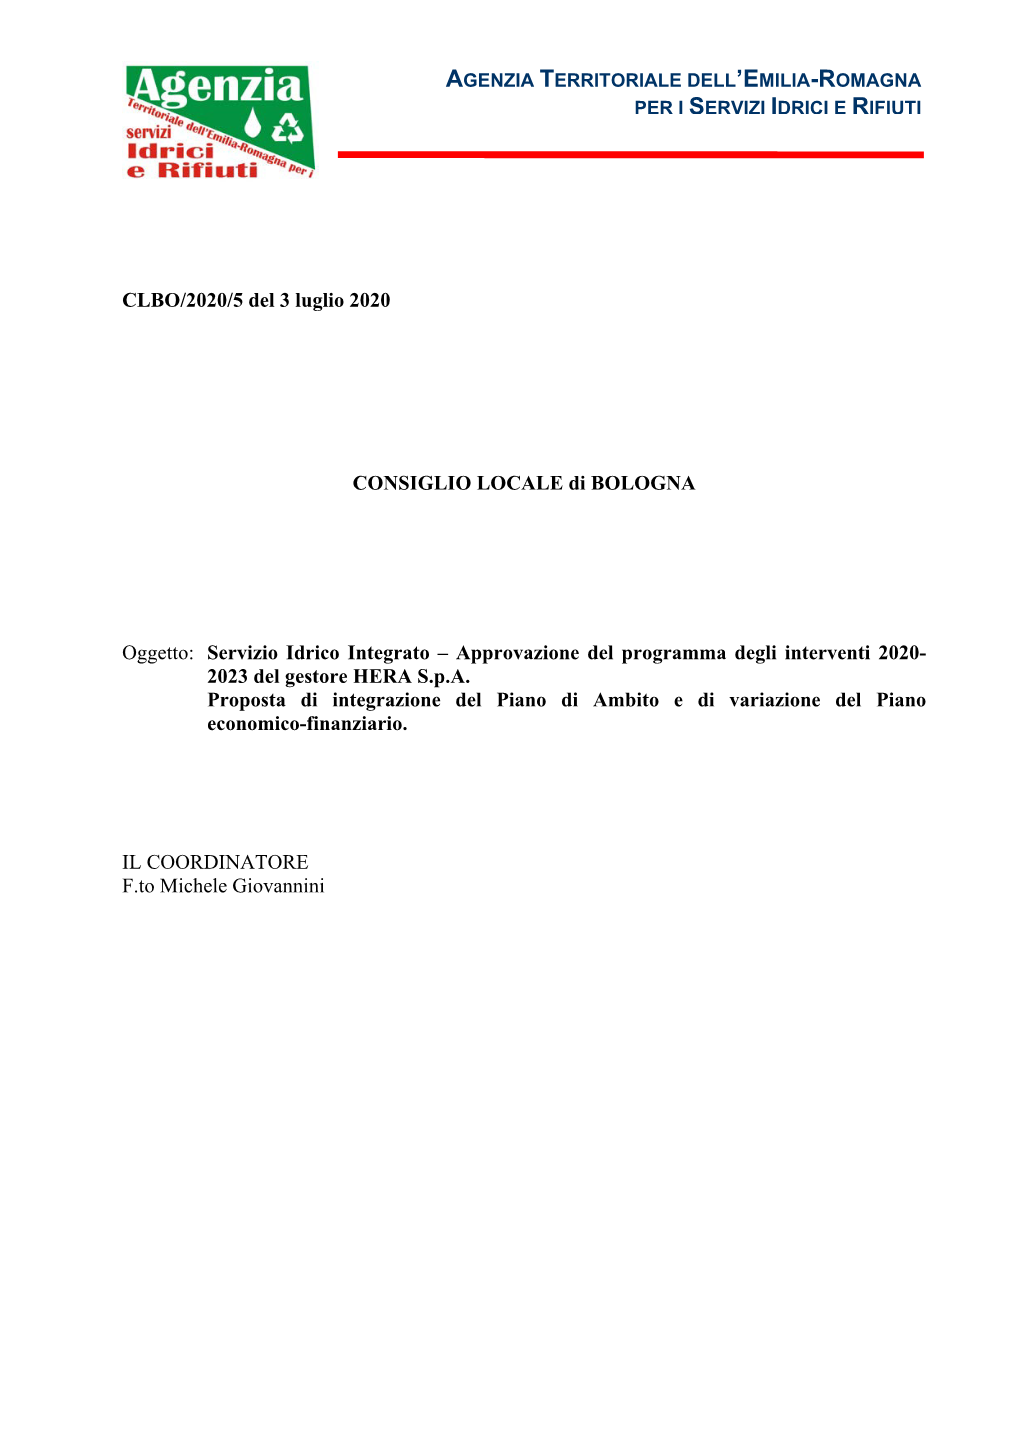 Deliberazione Del Consiglio Locale Di Bologna N. 5 Del 3 Luglio 2020